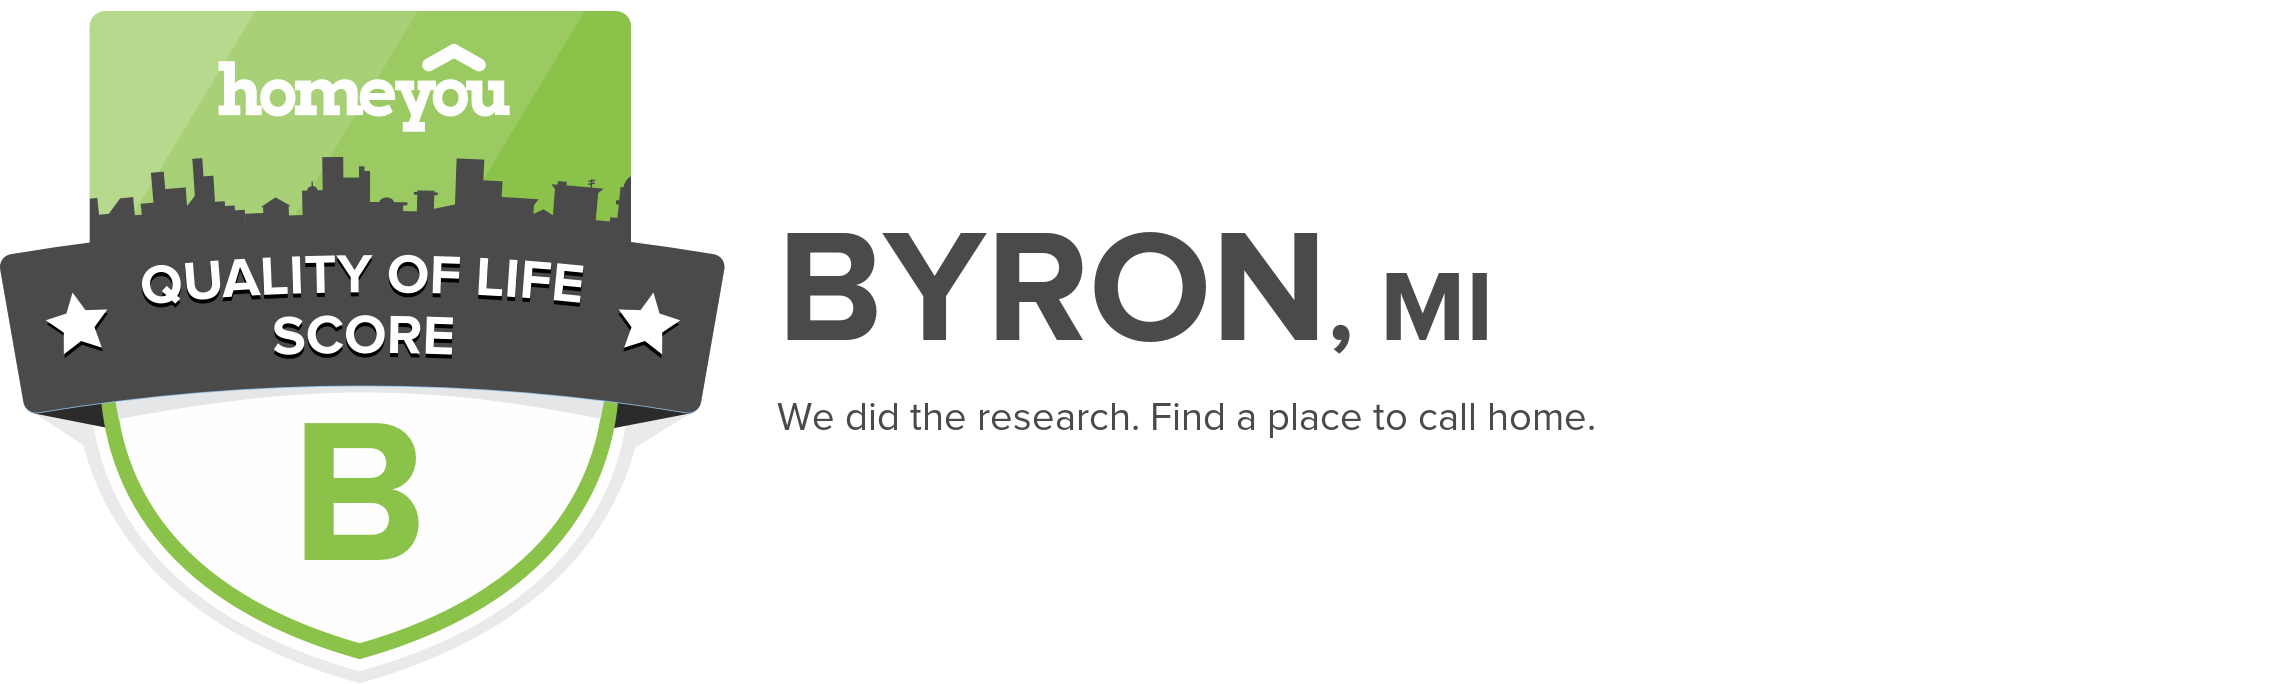 Byron, MI